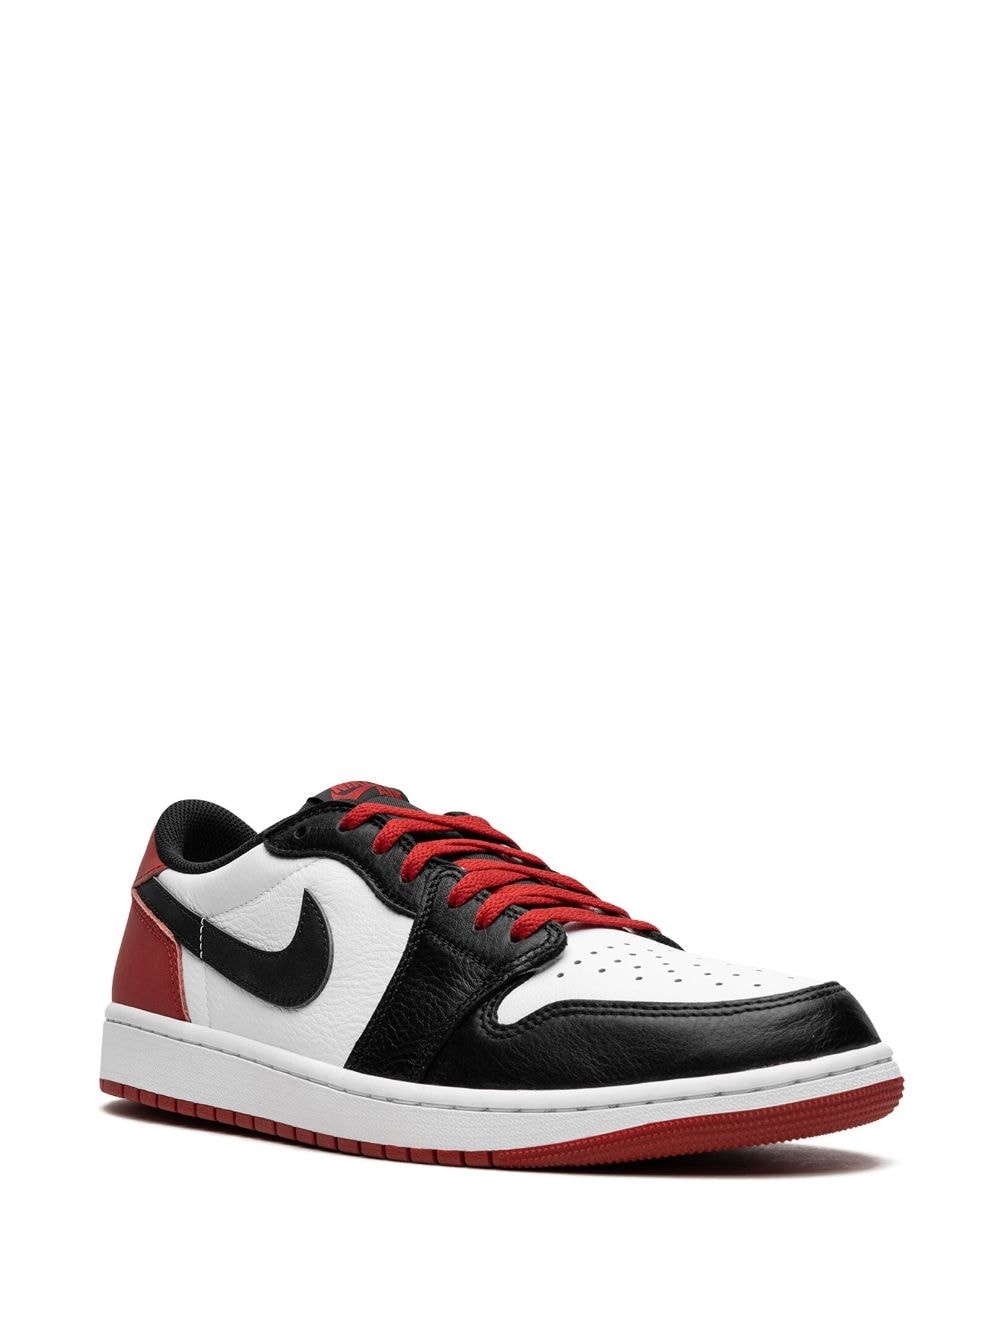 Air Jordan 1 Low OG "Black Toe" sneakers - 2